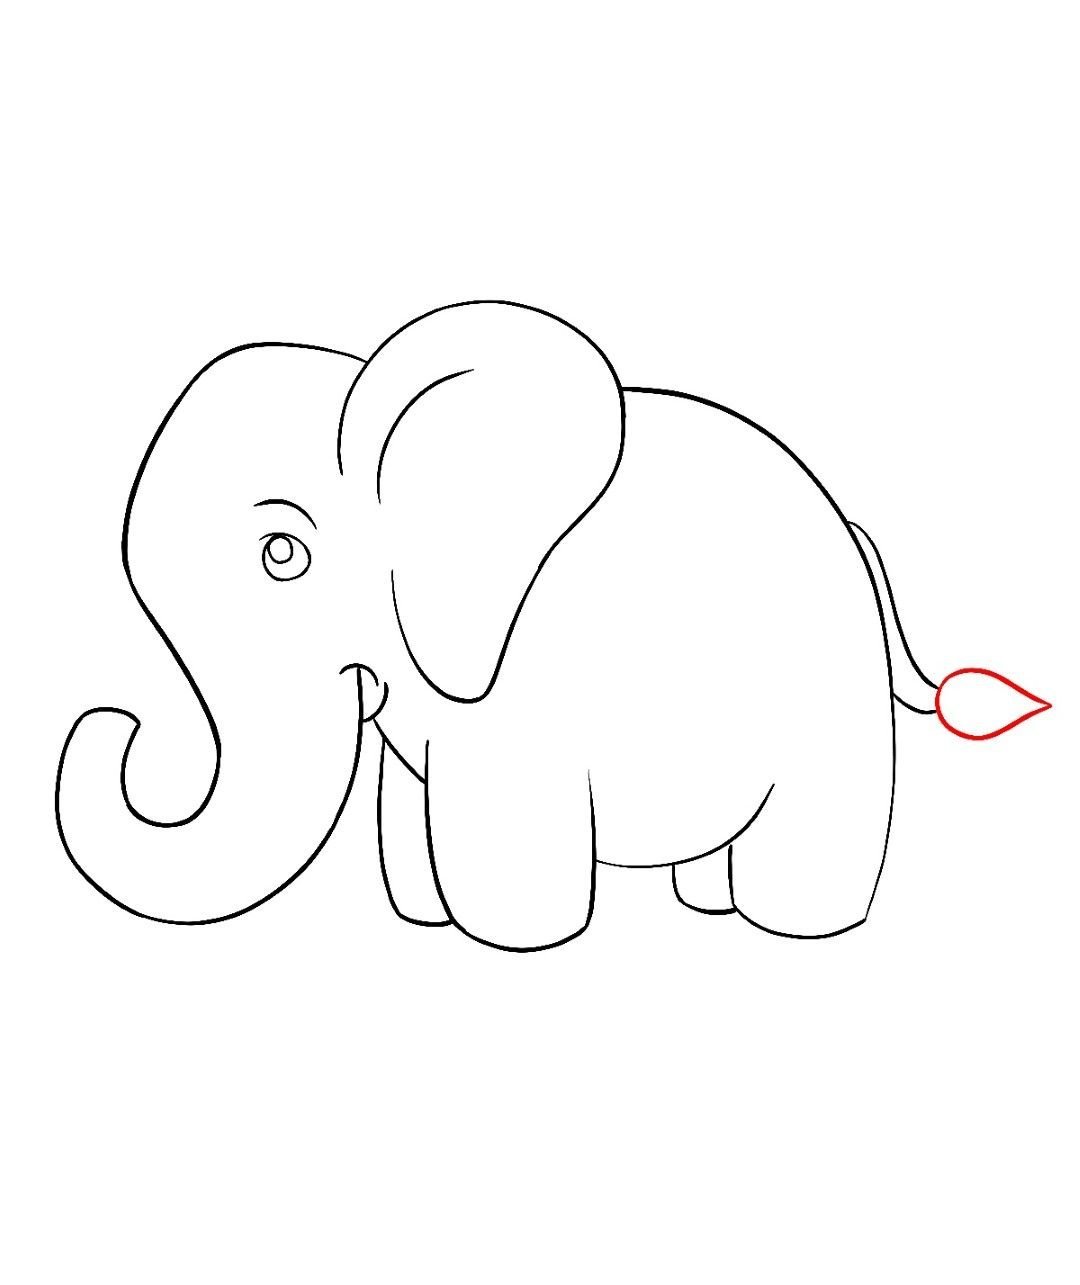 Нарисовать рисунок слона